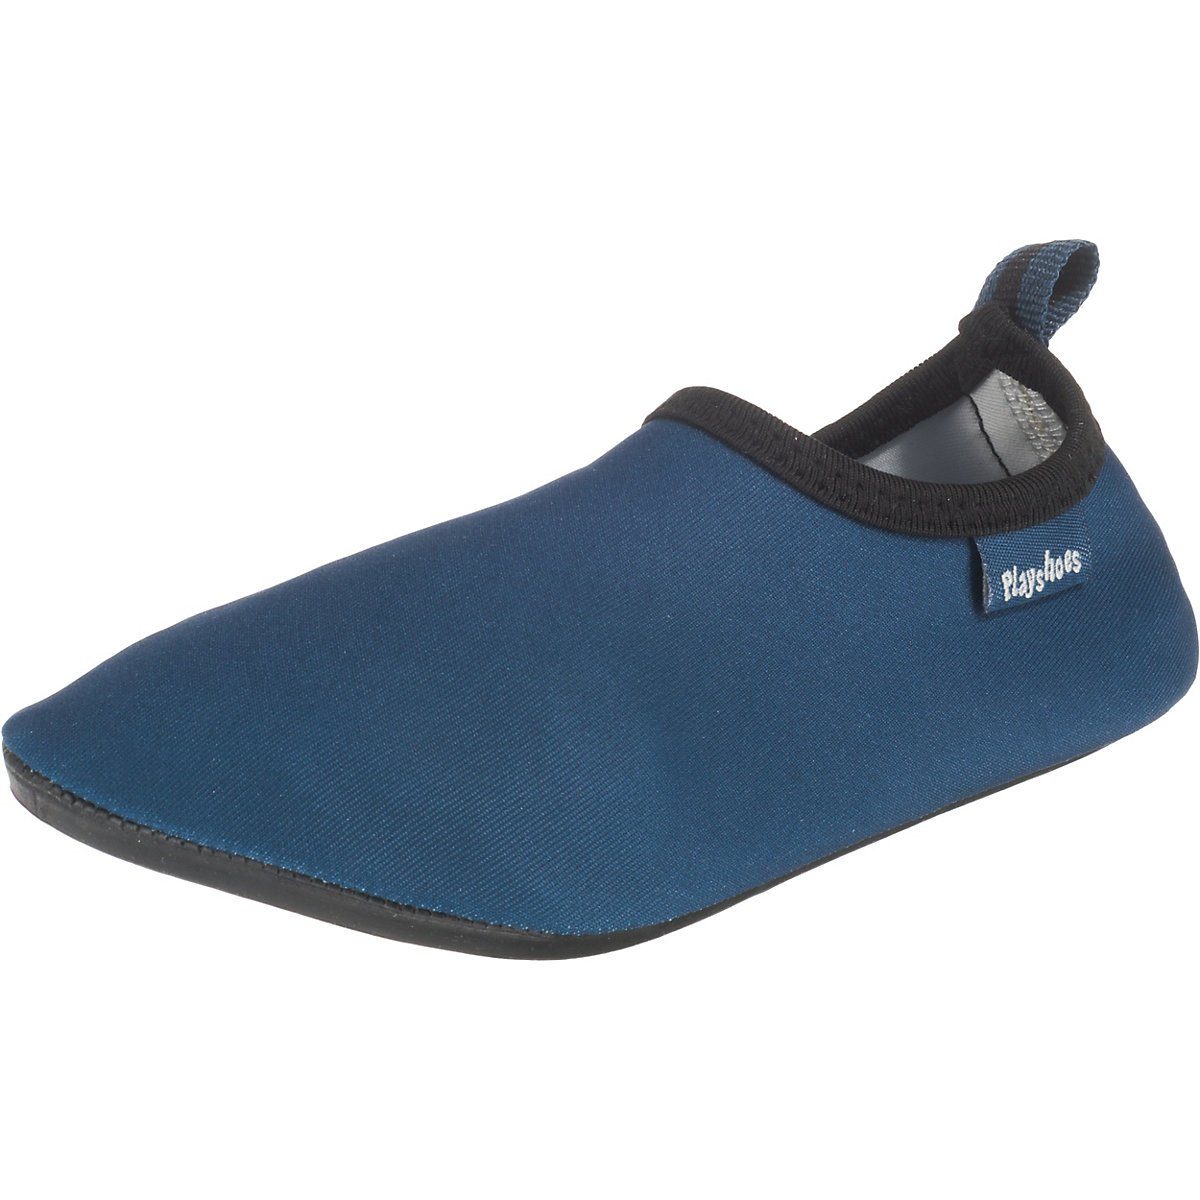 Playshoes Badeschuhe Wasserschuhe Badeschuh mit Sohle Passform, flexible Uni rutschhemmender Barfuß-Schuh Schwimmschuhe, blau